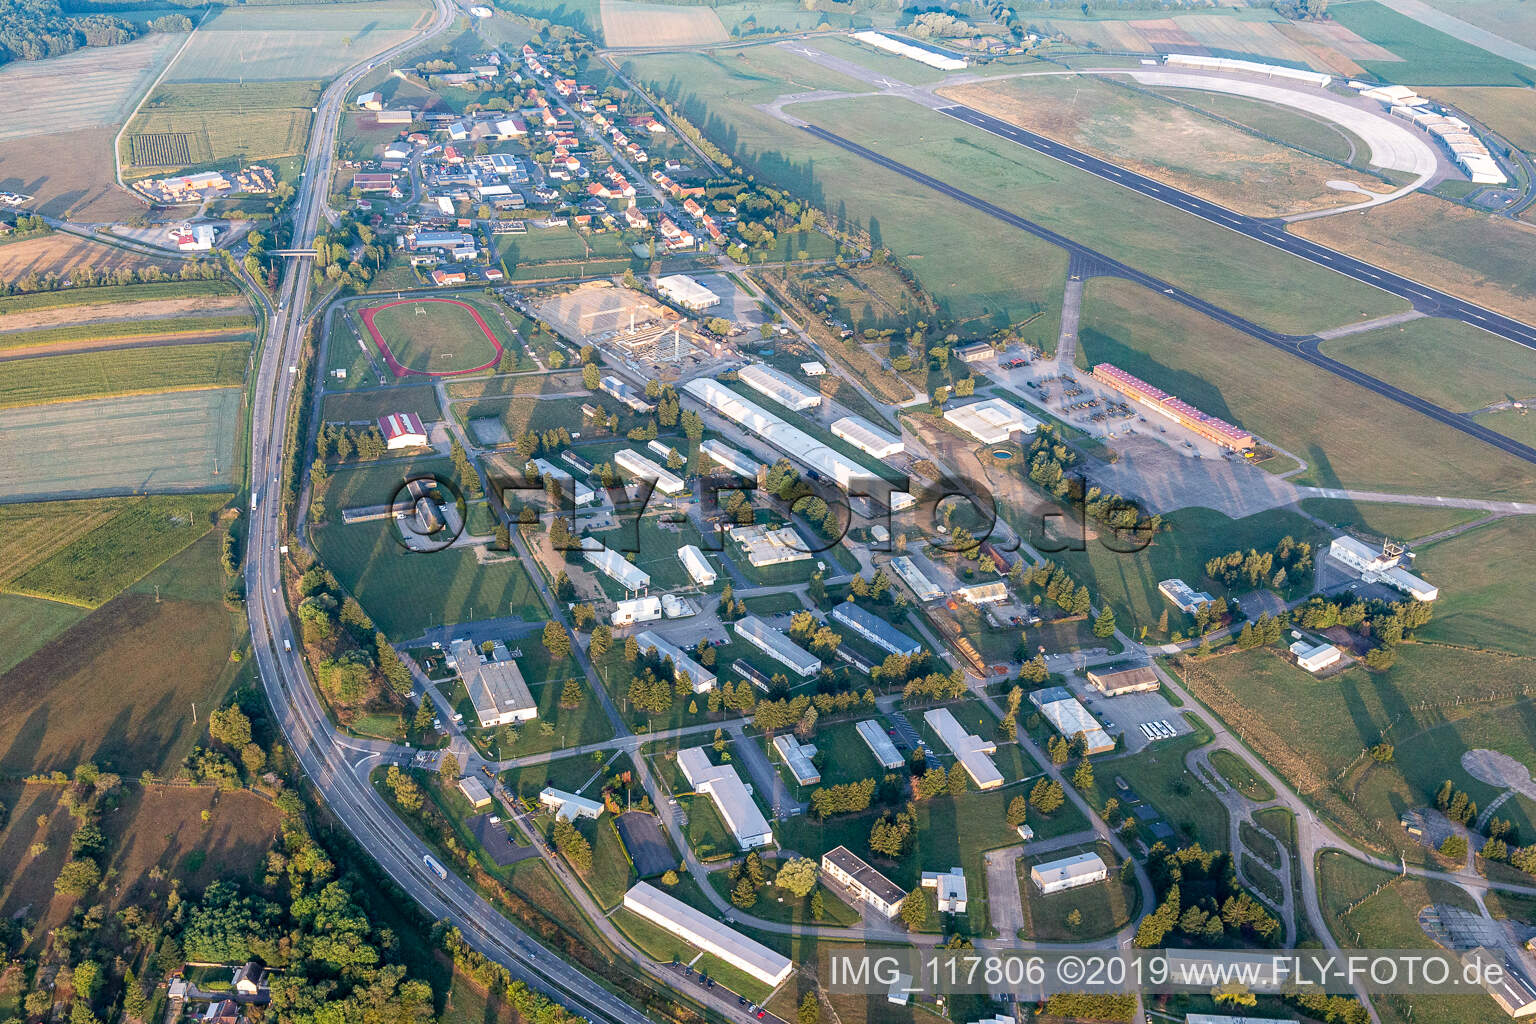 Vue aérienne de Bâtiments et piste avec zone de taxiway de l'aérodrome militaire de Phalsbourg-Bourscheid "Camp LA Hori à Saint-Jean-Kourtzerode dans le département Moselle, France